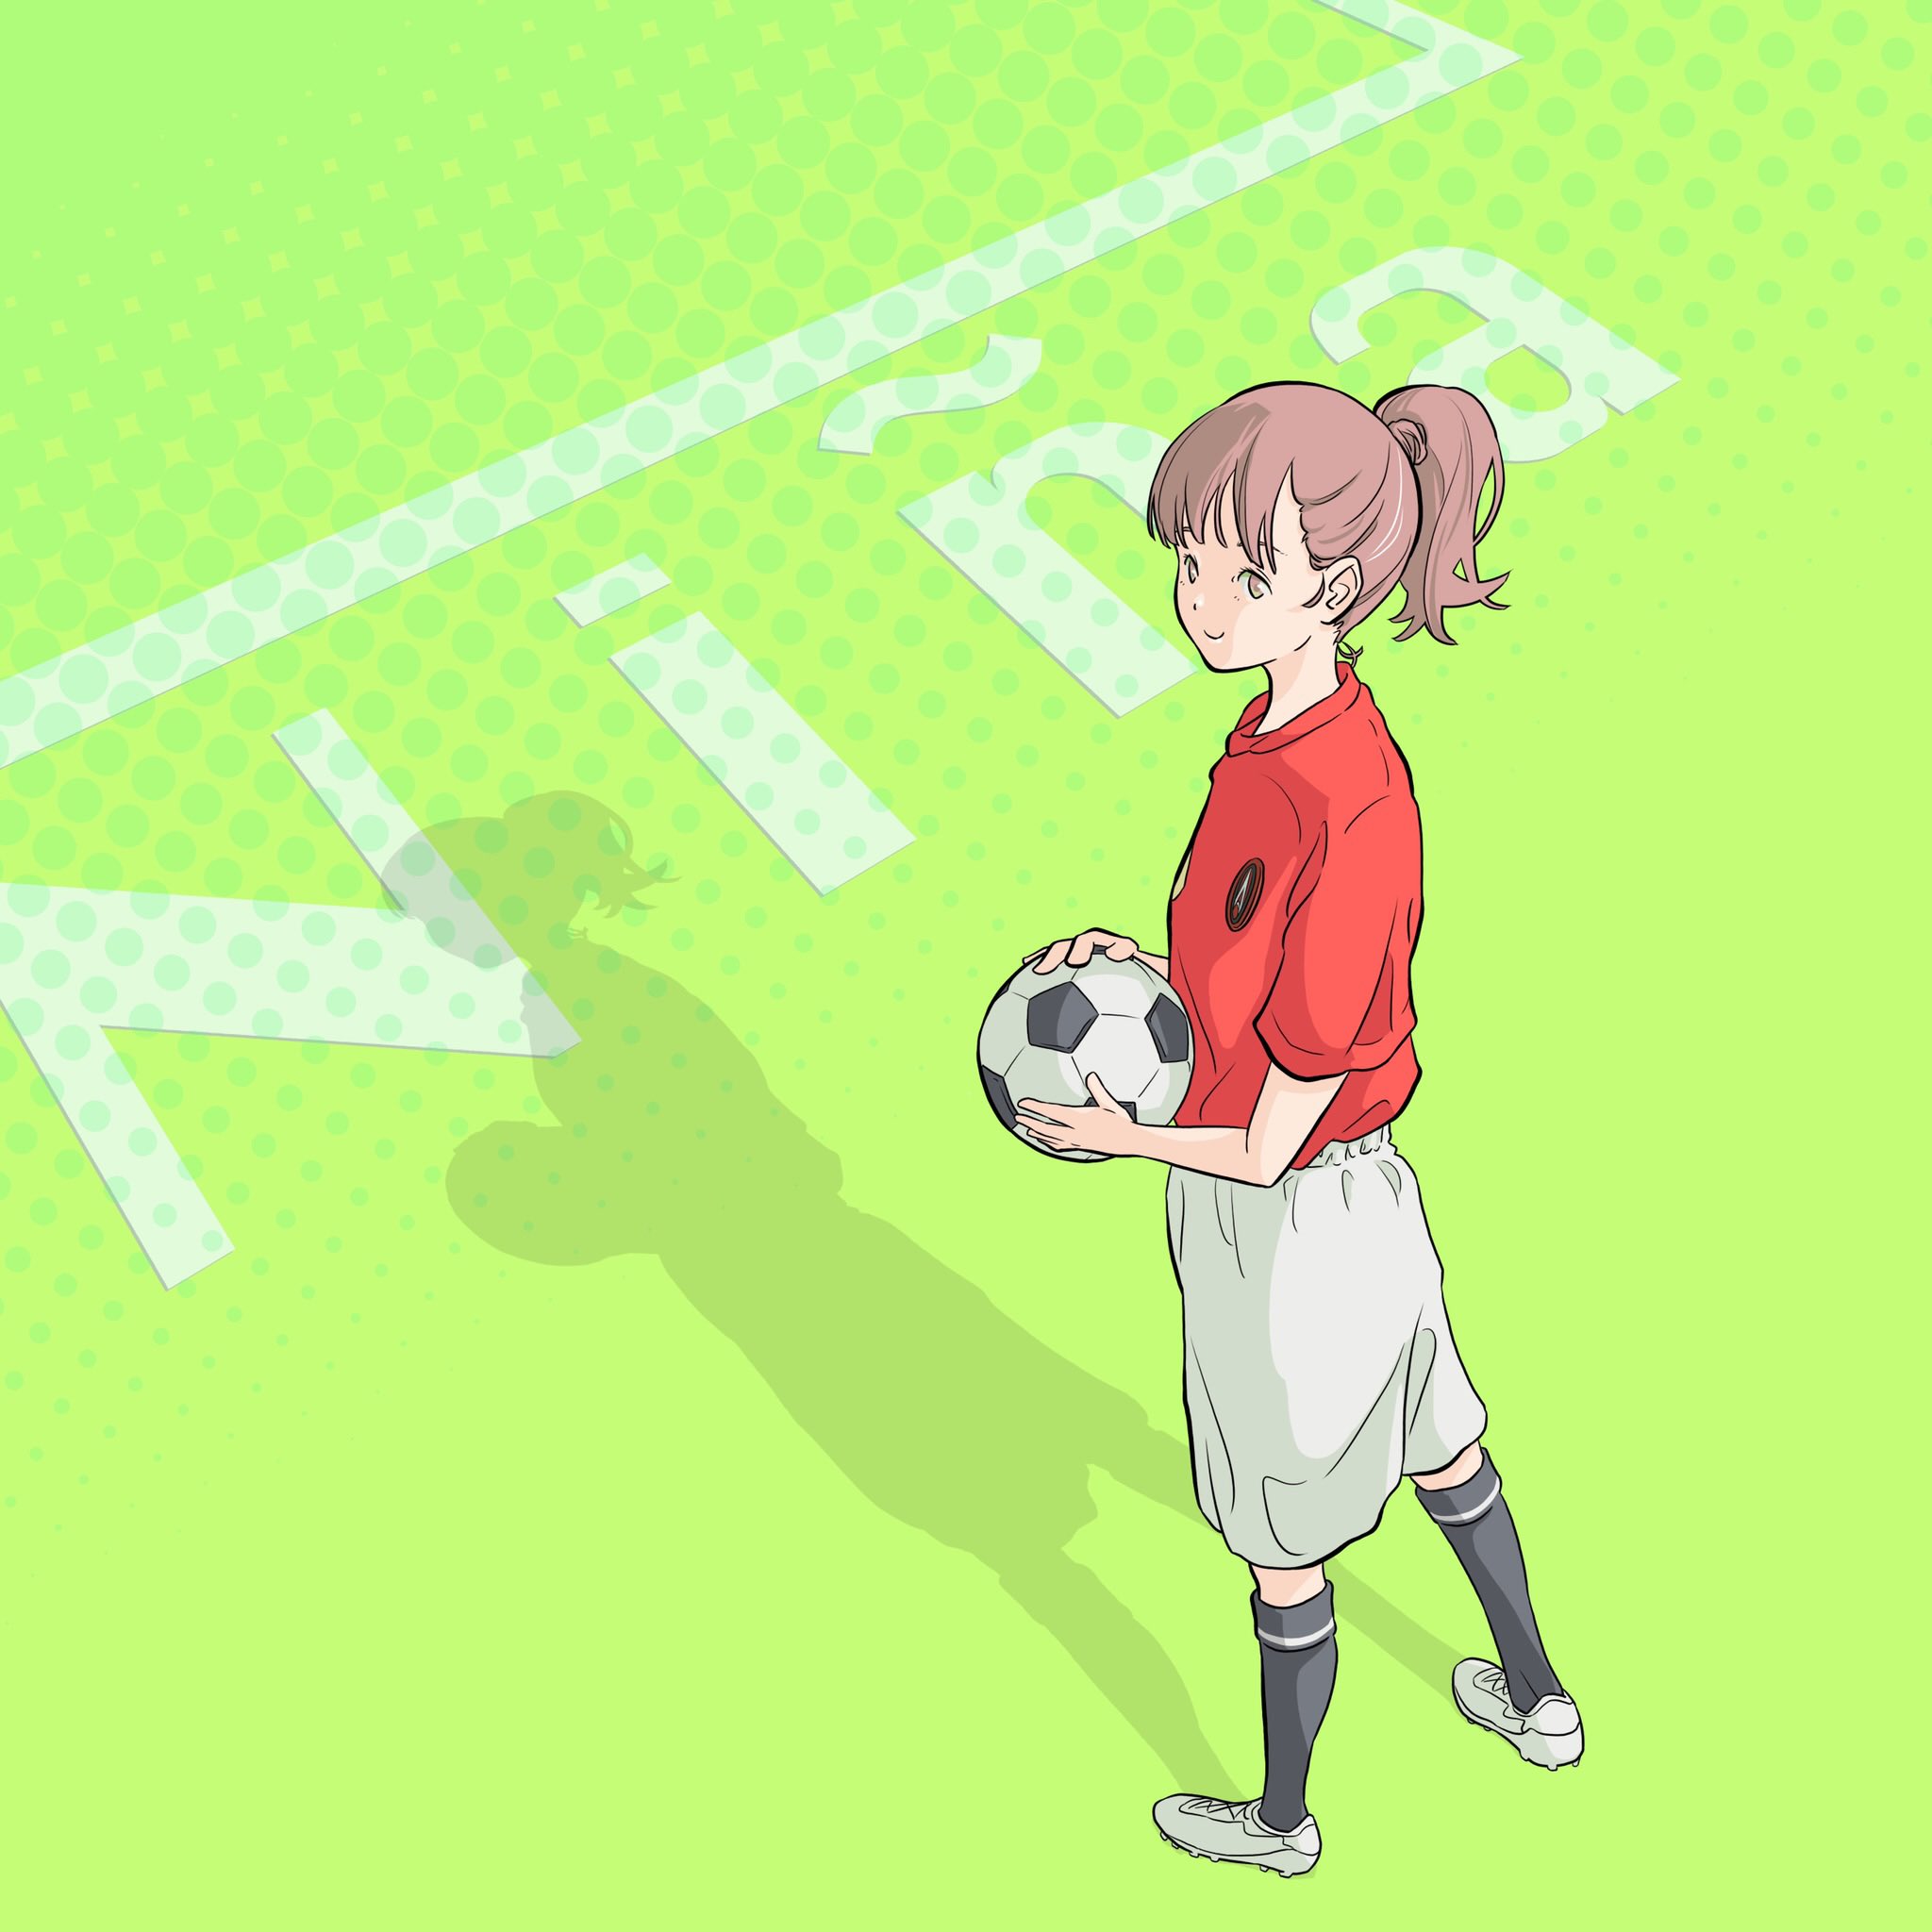 توییتر まもる Mamoru در توییتر ジョッカーは可愛い アスフィーダ熊本という女子サッカークラブのイラストを描かせていただきました 女子サッカーってジョッカーっていうらしいです このイラストからジョッカーが増えると嬉しいなー 可愛いと思ったらrt